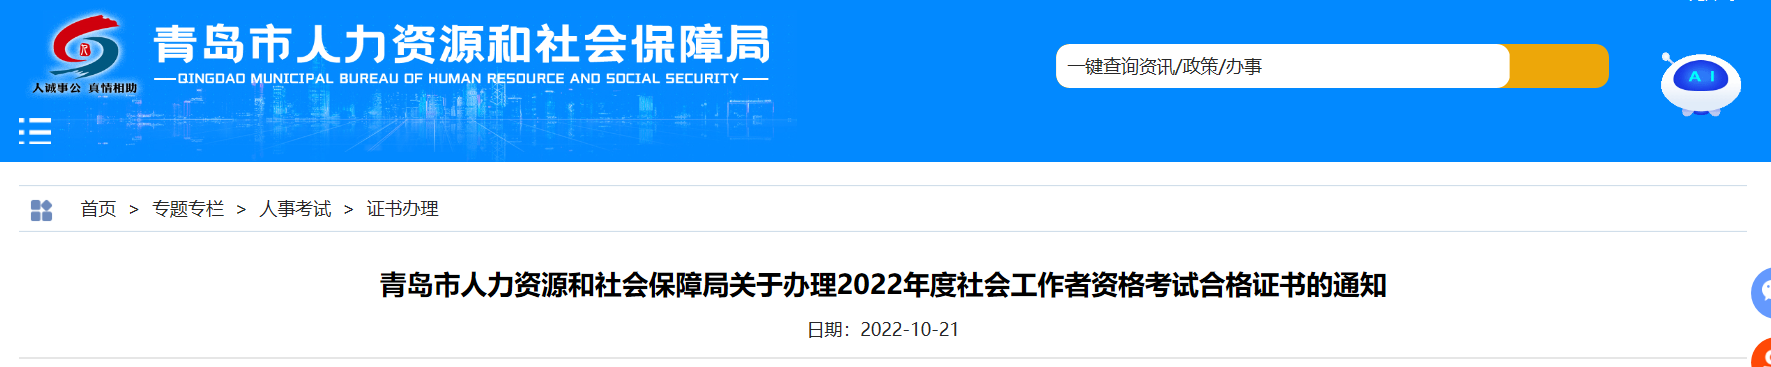 关于办理2022年山东青岛社会工作者资格考试合格证书的通知